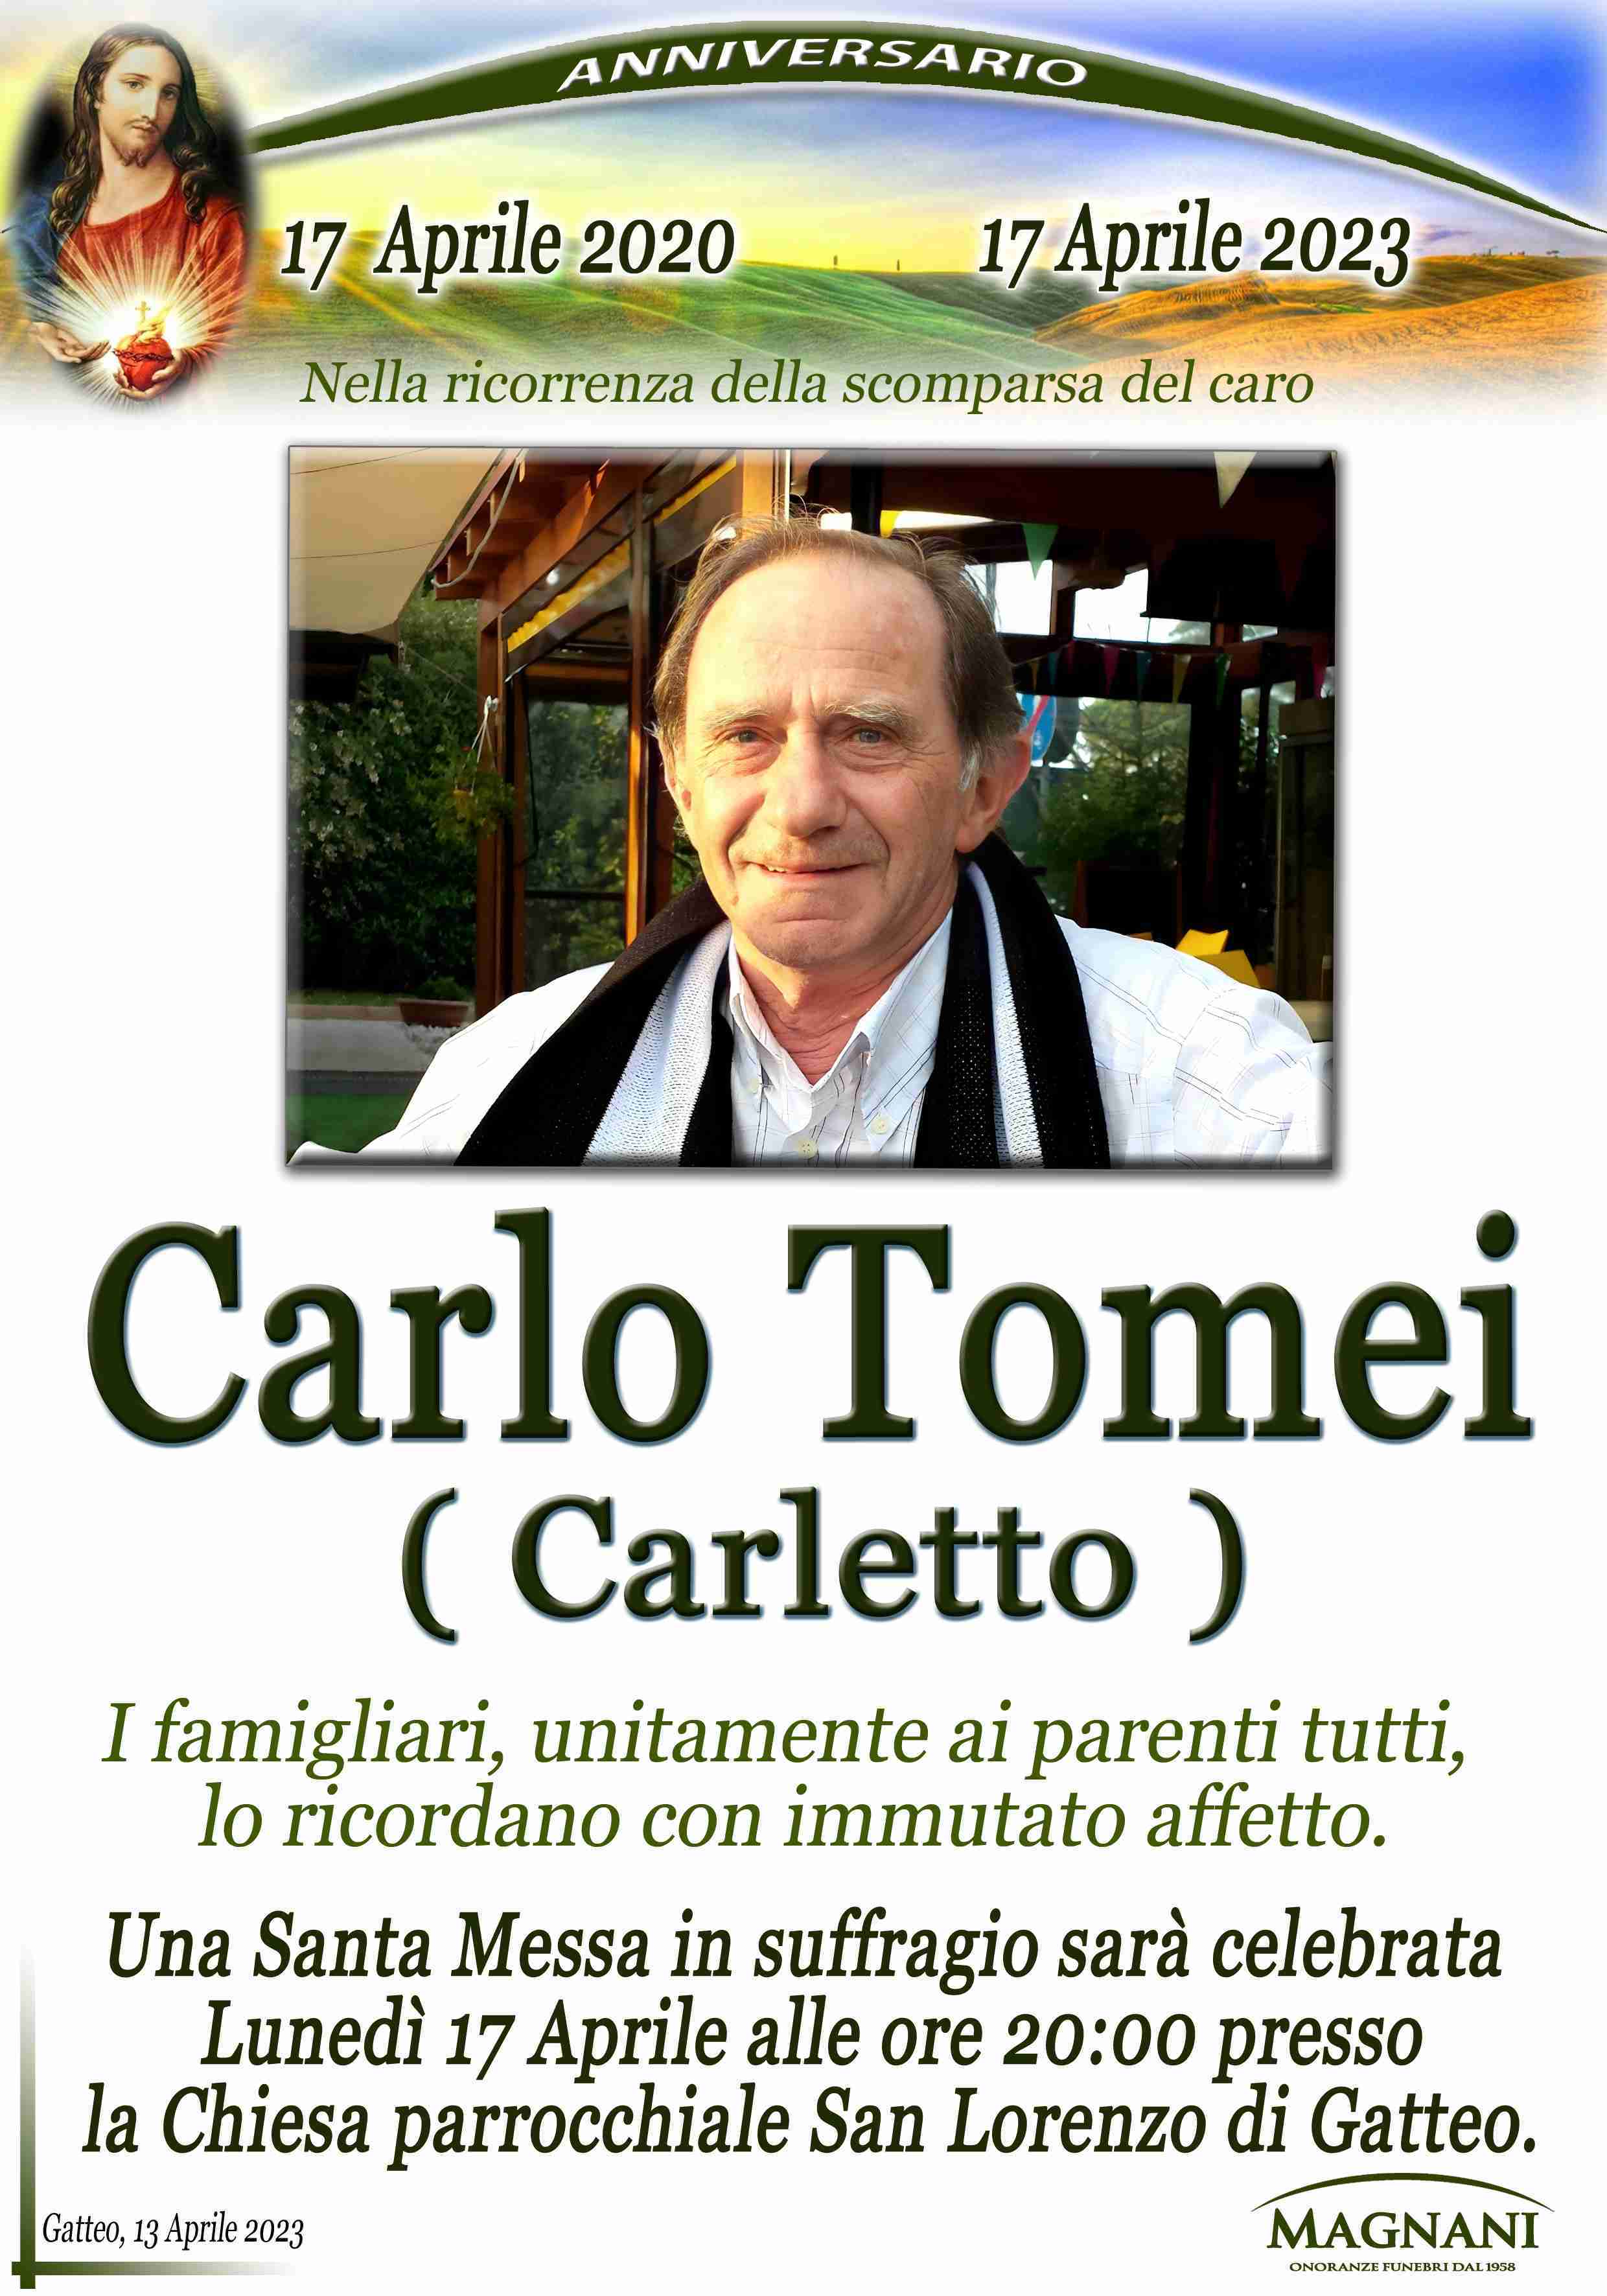 Carlo Tomei